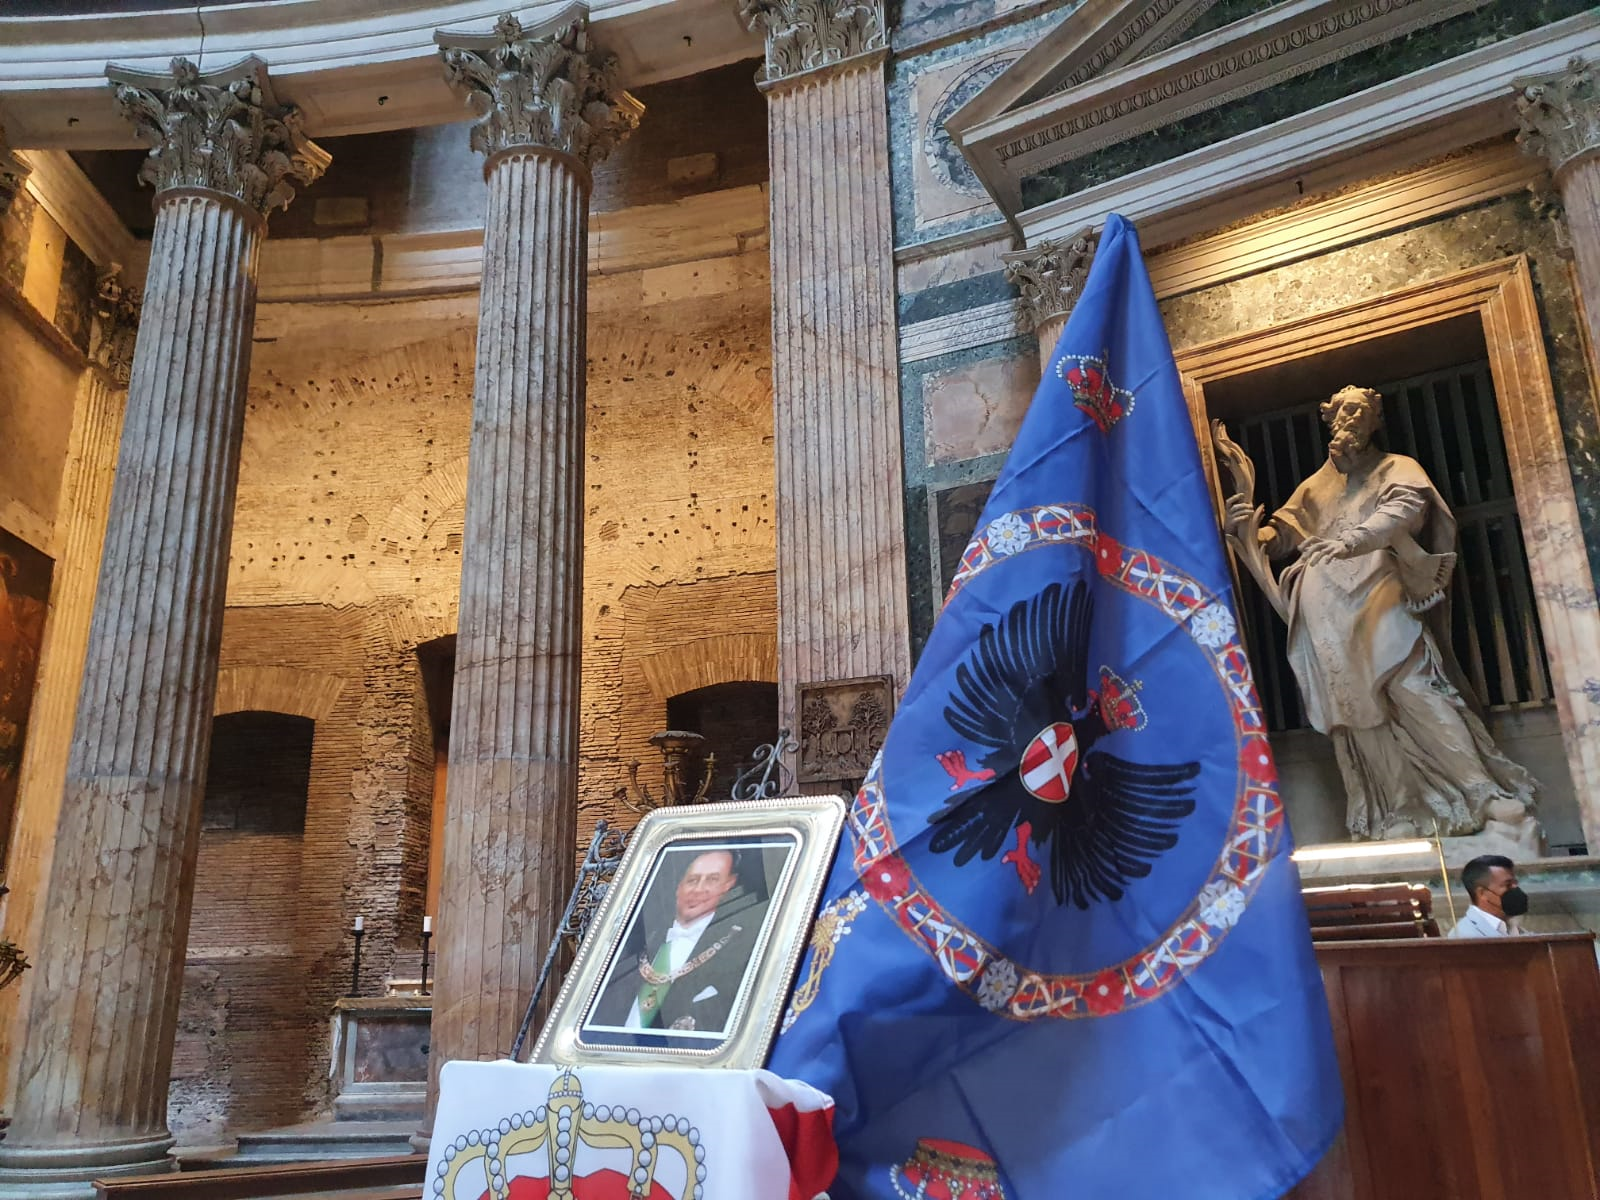 Relazione sulla serie di eventi del 16 e 17 ottobre 2021 a Roma in celebrazione del genetliaco di SAR il Principe Aimone, Duca di Savoia, e in memoria dell’Augusto padre, Principe Amedeo